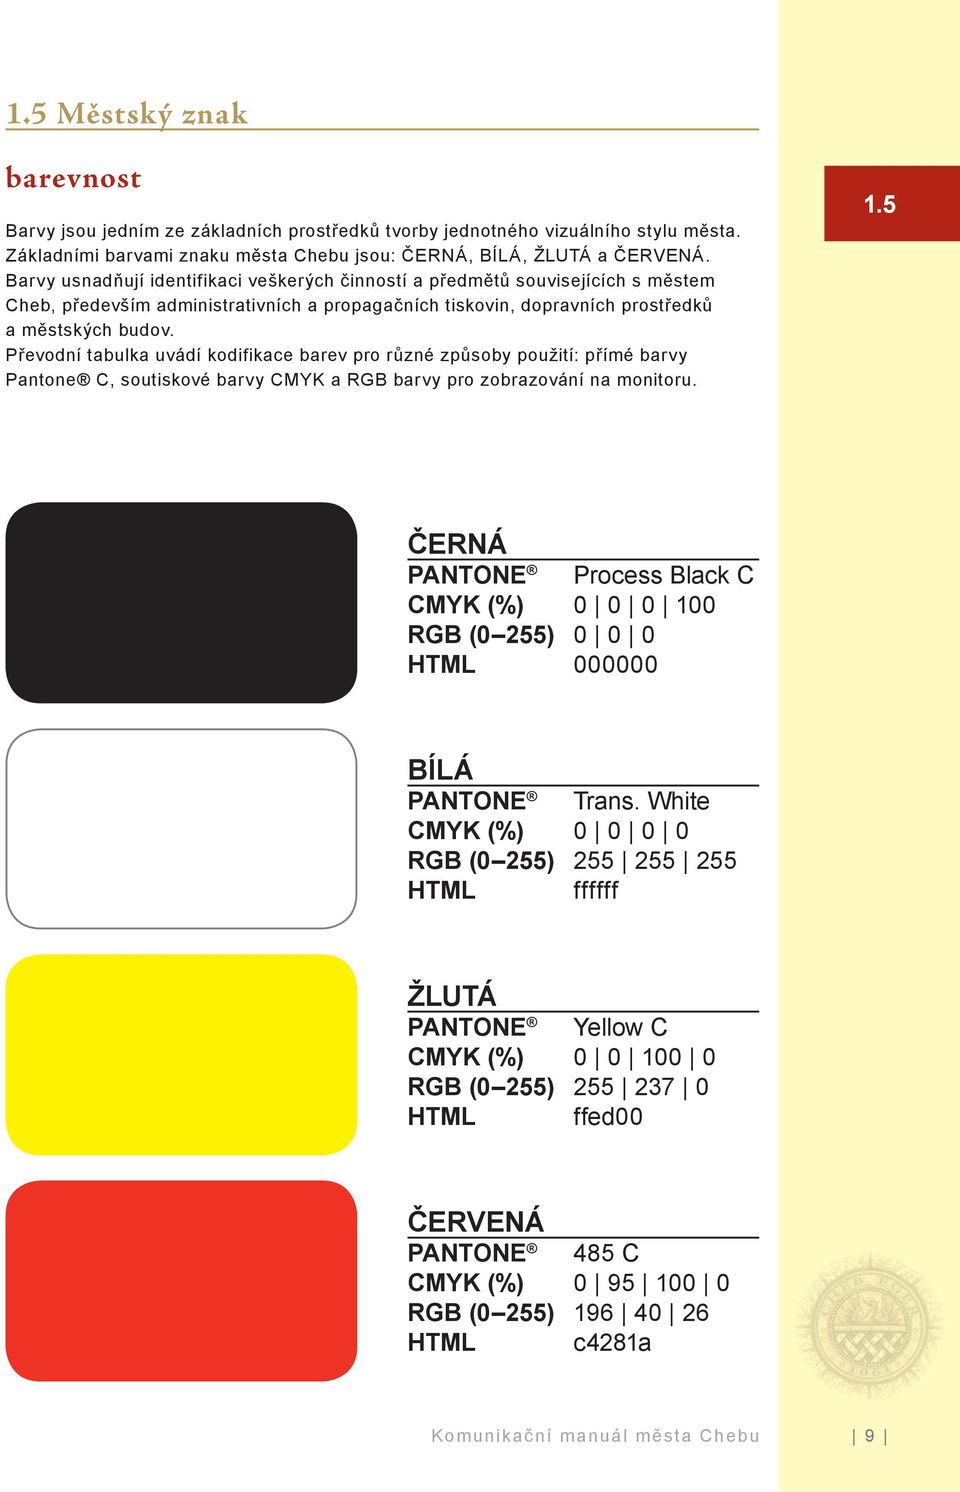 Převodní tabulka uvádí kodifikace barev pro různé způsoby použití: přímé barvy Pantone C, soutiskové barvy CMYK a RGB barvy pro zobrazování na monitoru. 1.